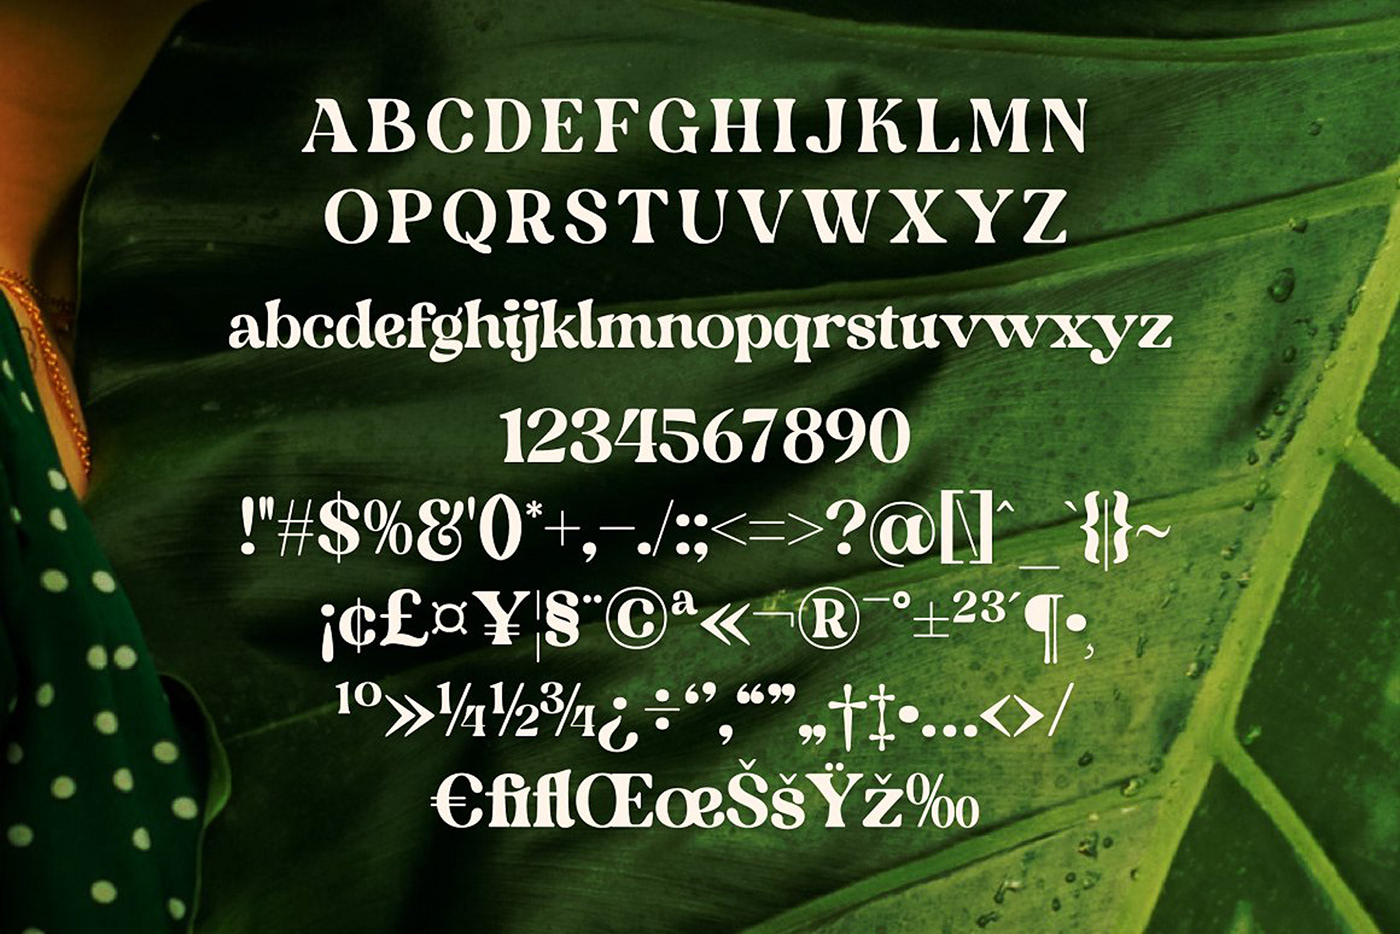 art deco font bold font cursive font display font ligature font modern font retro font type design Typeface vintage font